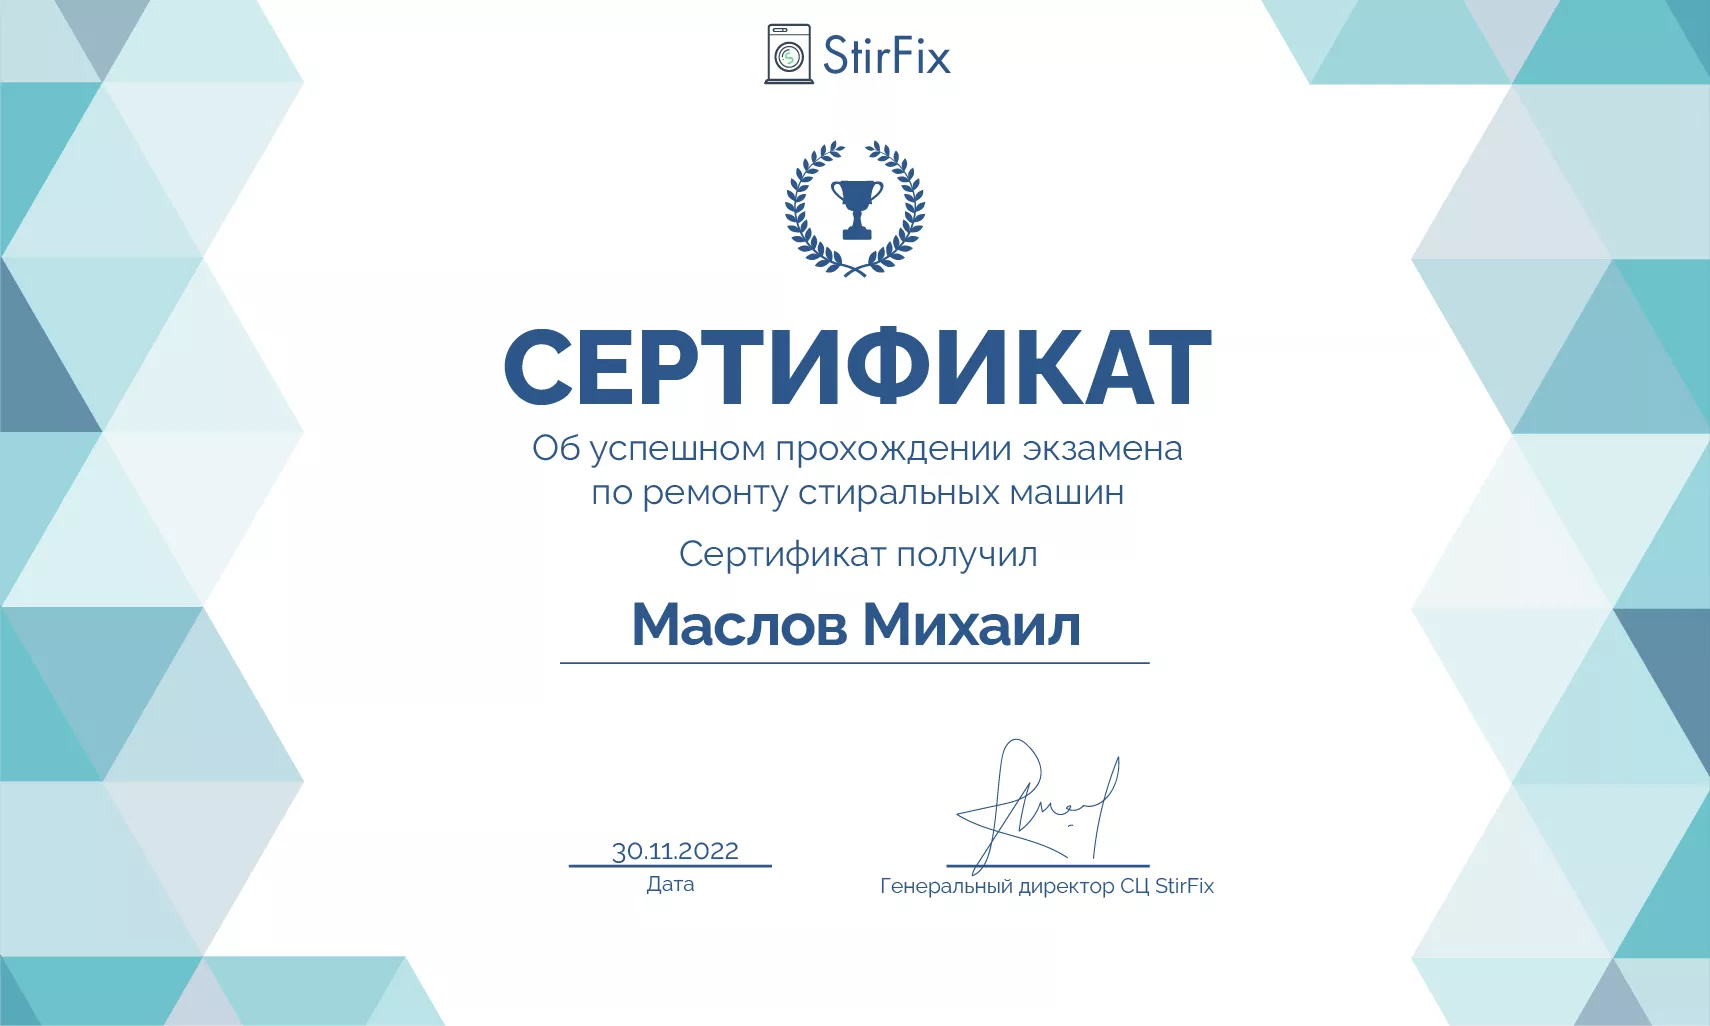 Маслов Михаил сертификат мастера по ремонту стиральных машин